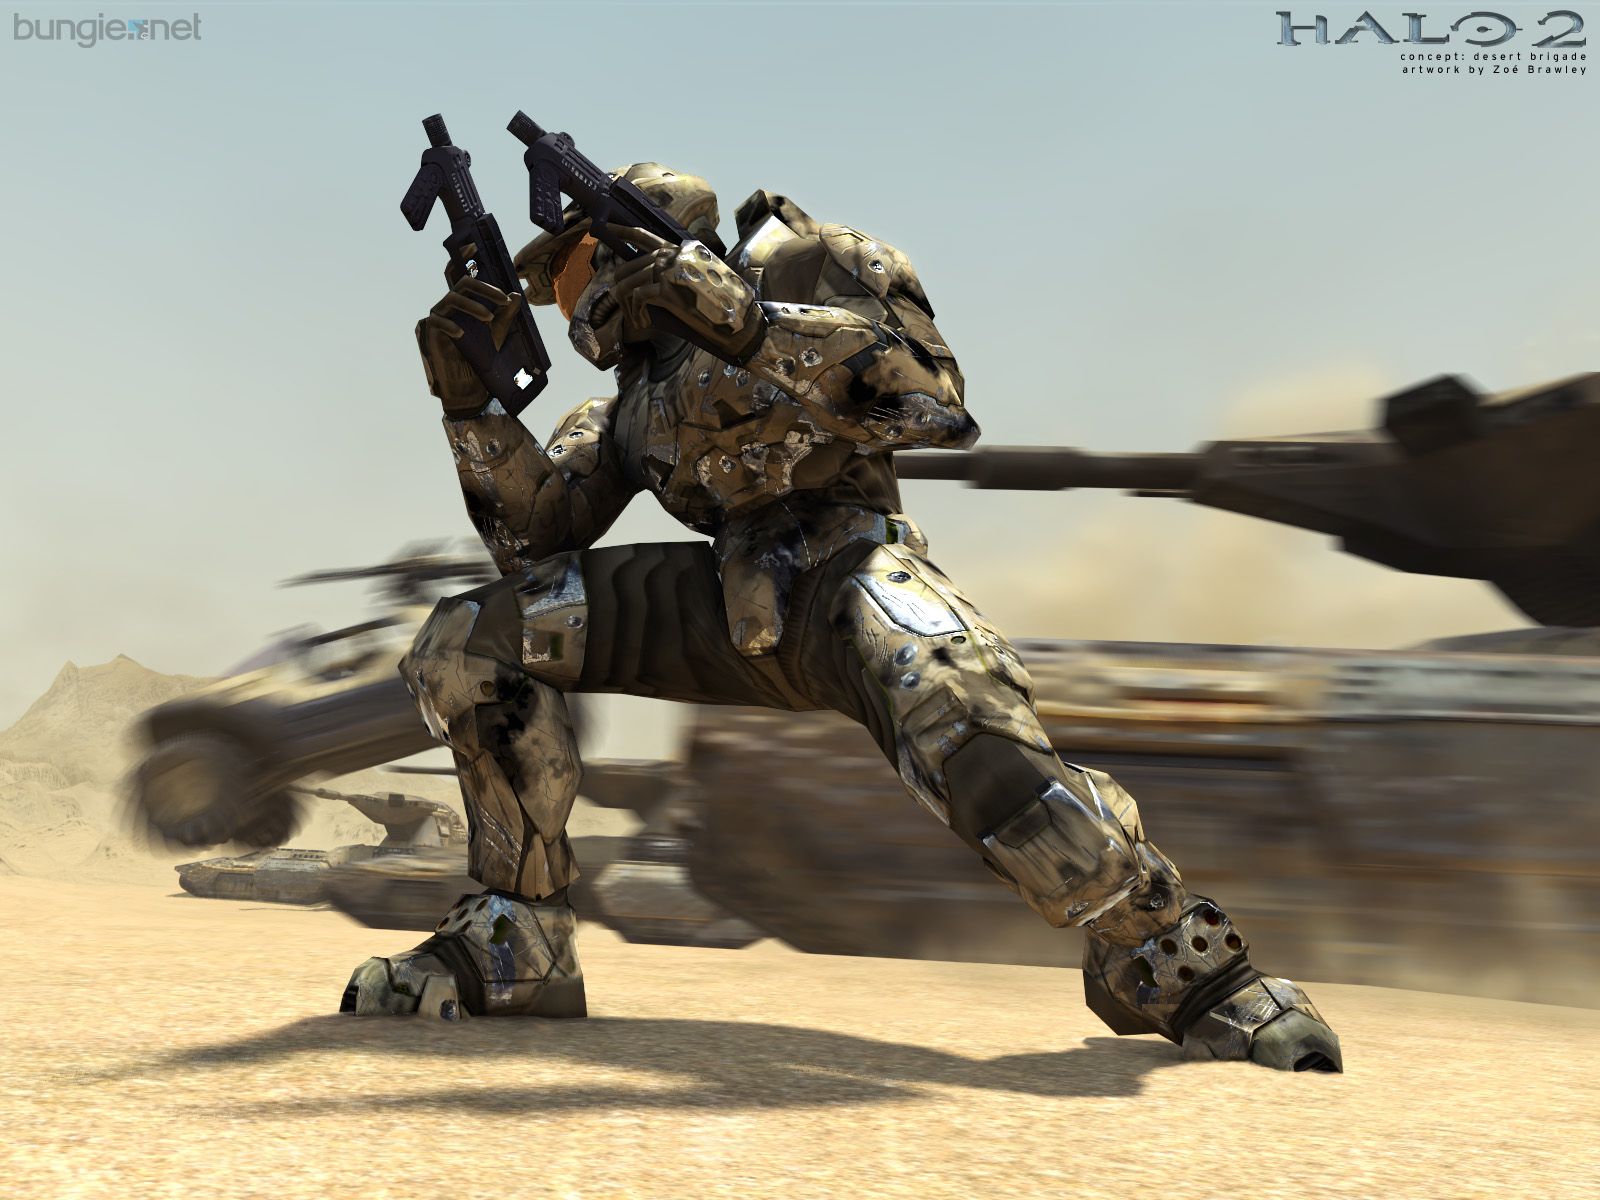 Fond d'écran gratuit de Halo 2 numéro 44624